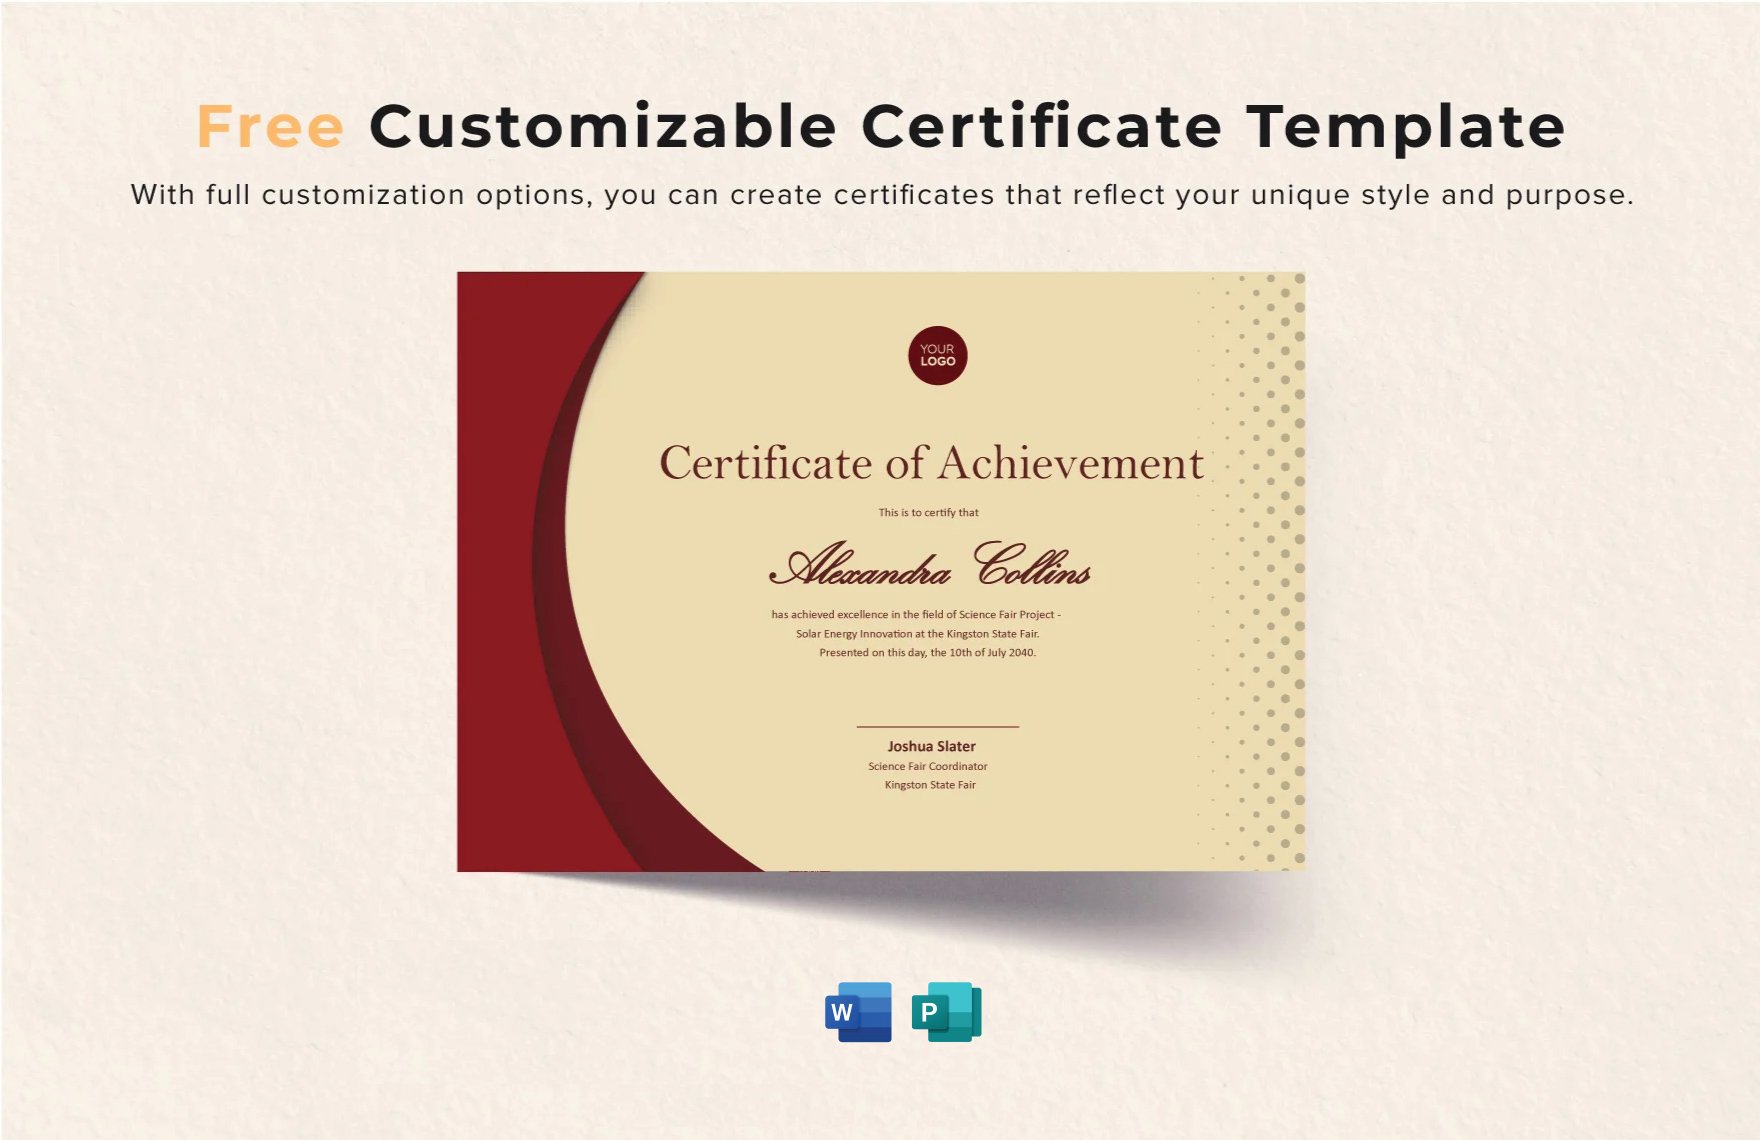 Free Customizable Certificate Template